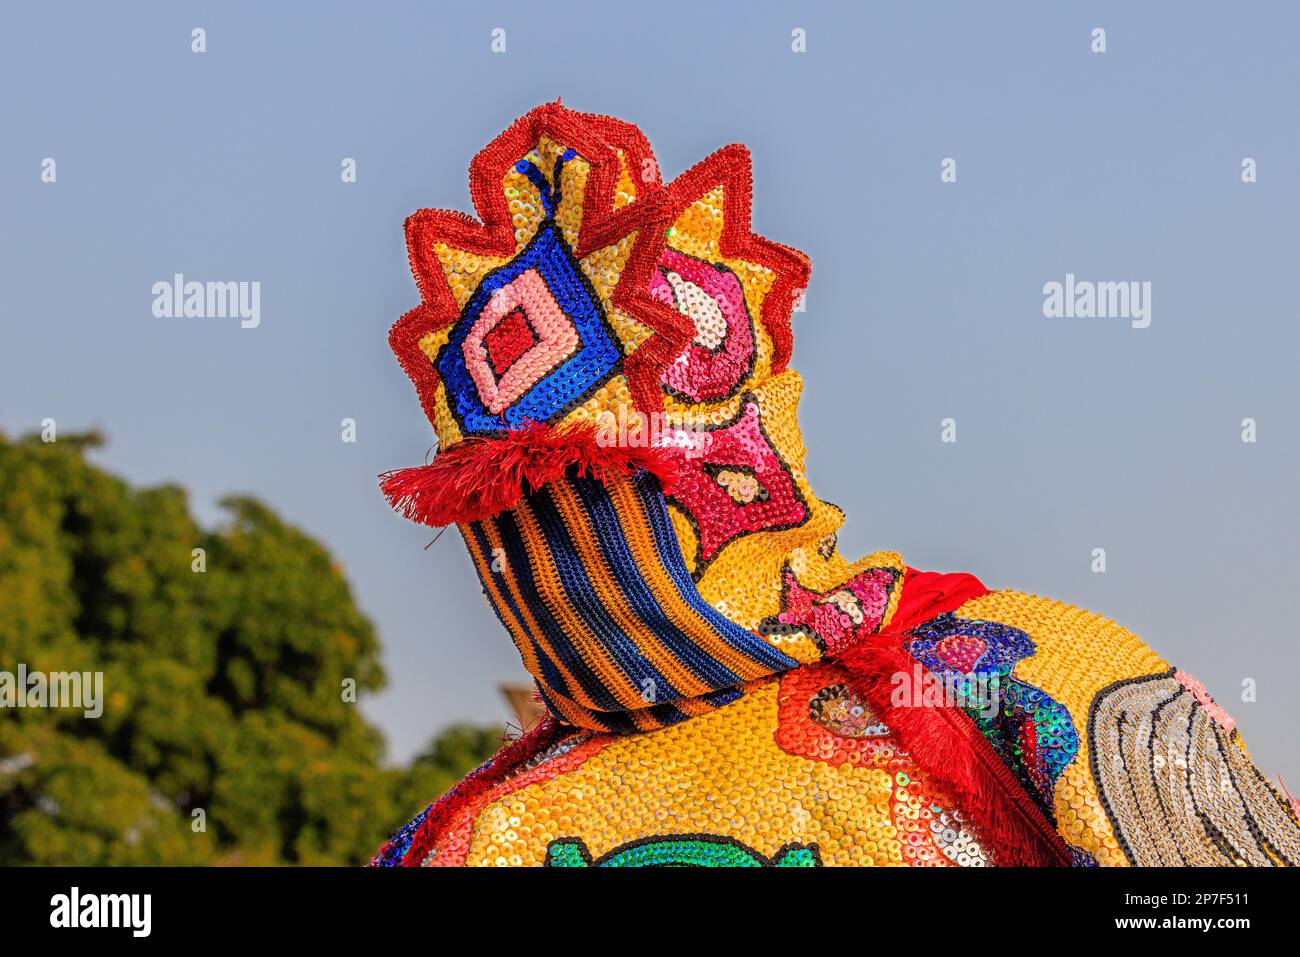 gros plan sur le visage masqué d'un eguinguin aux couleurs vives du festival voodoo annuel de ouidah au bénin Banque D'Images